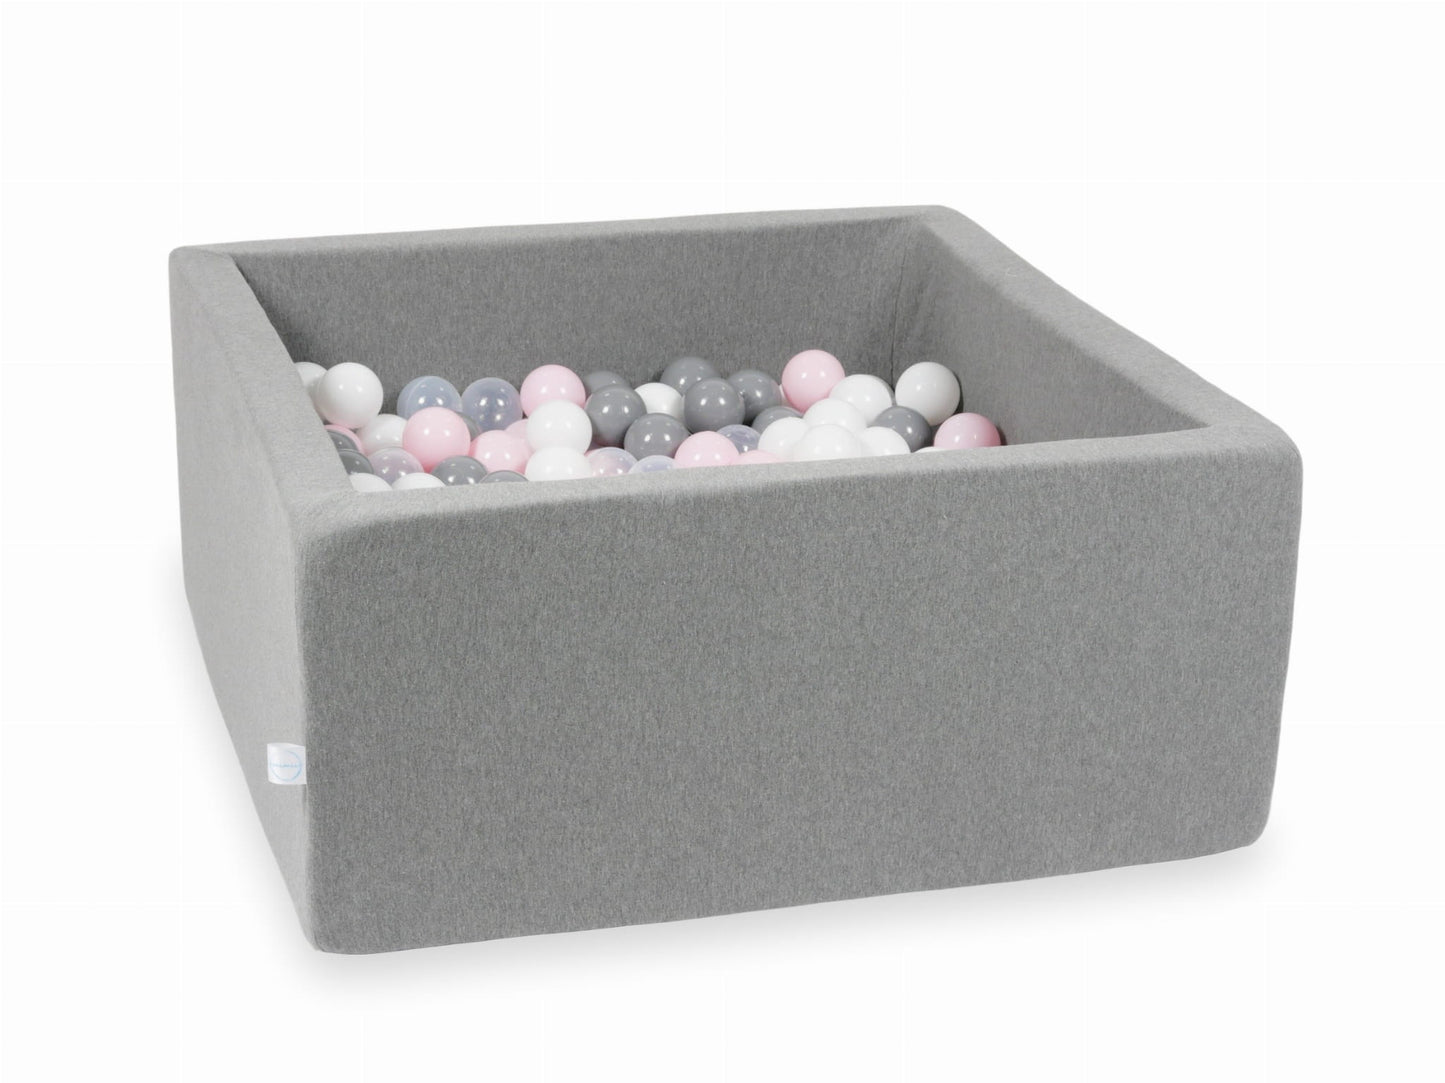 Piscine à Balles 90x90x40 grise avec balles 400 pcs (transparent, blanc, gris, rose clair)